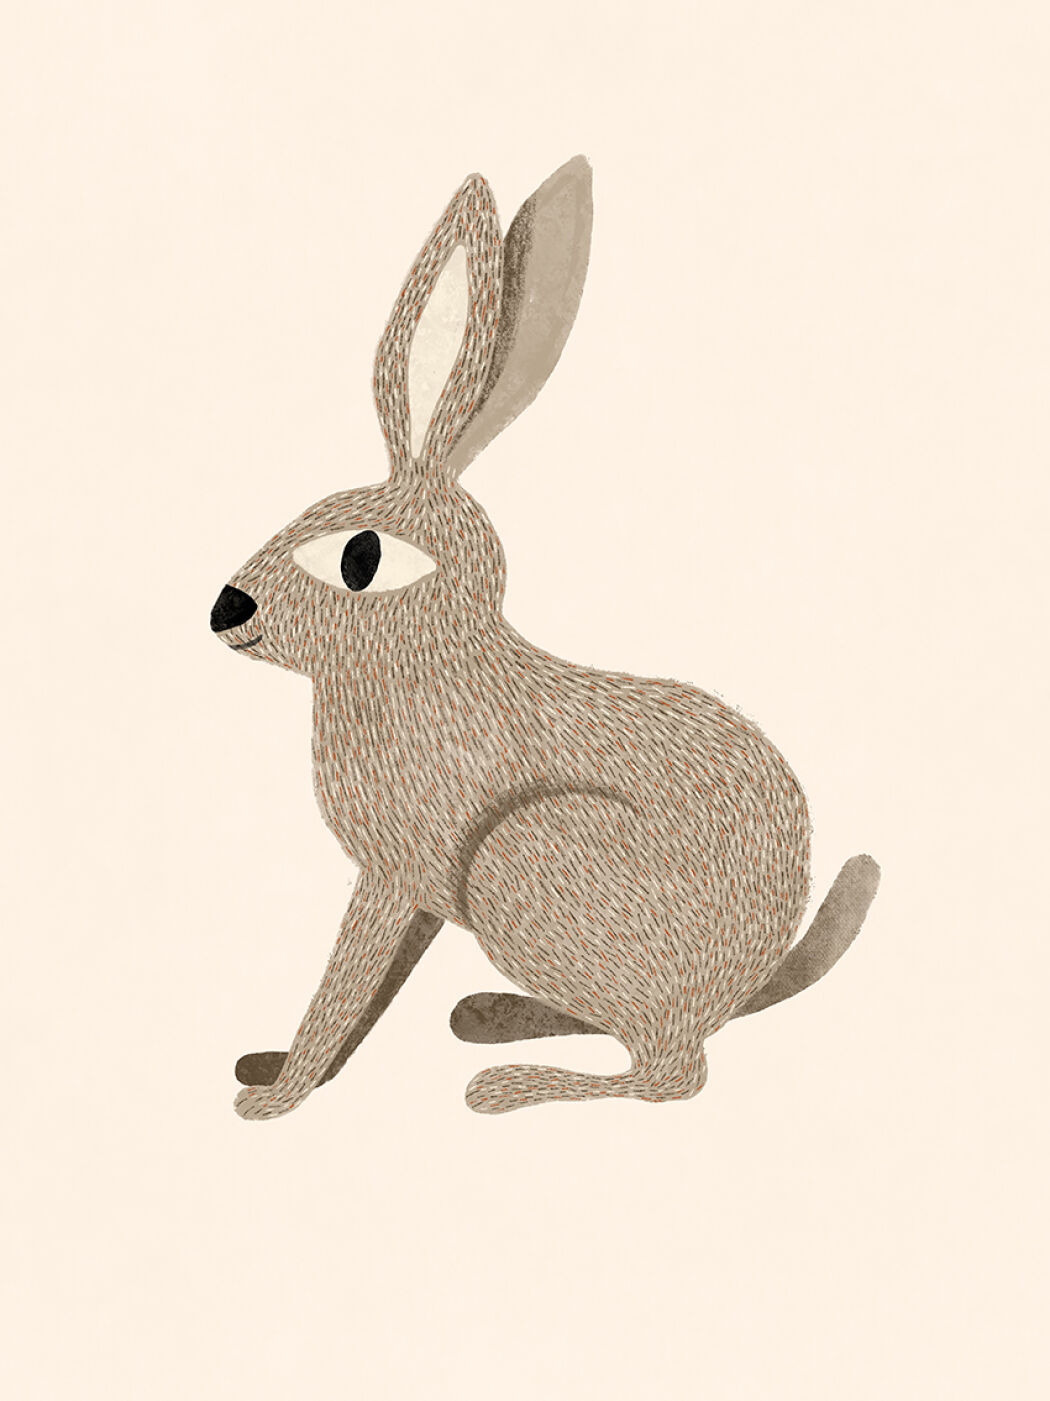 Rabbit in vintage style illustrated by Ingela P Arrhenius